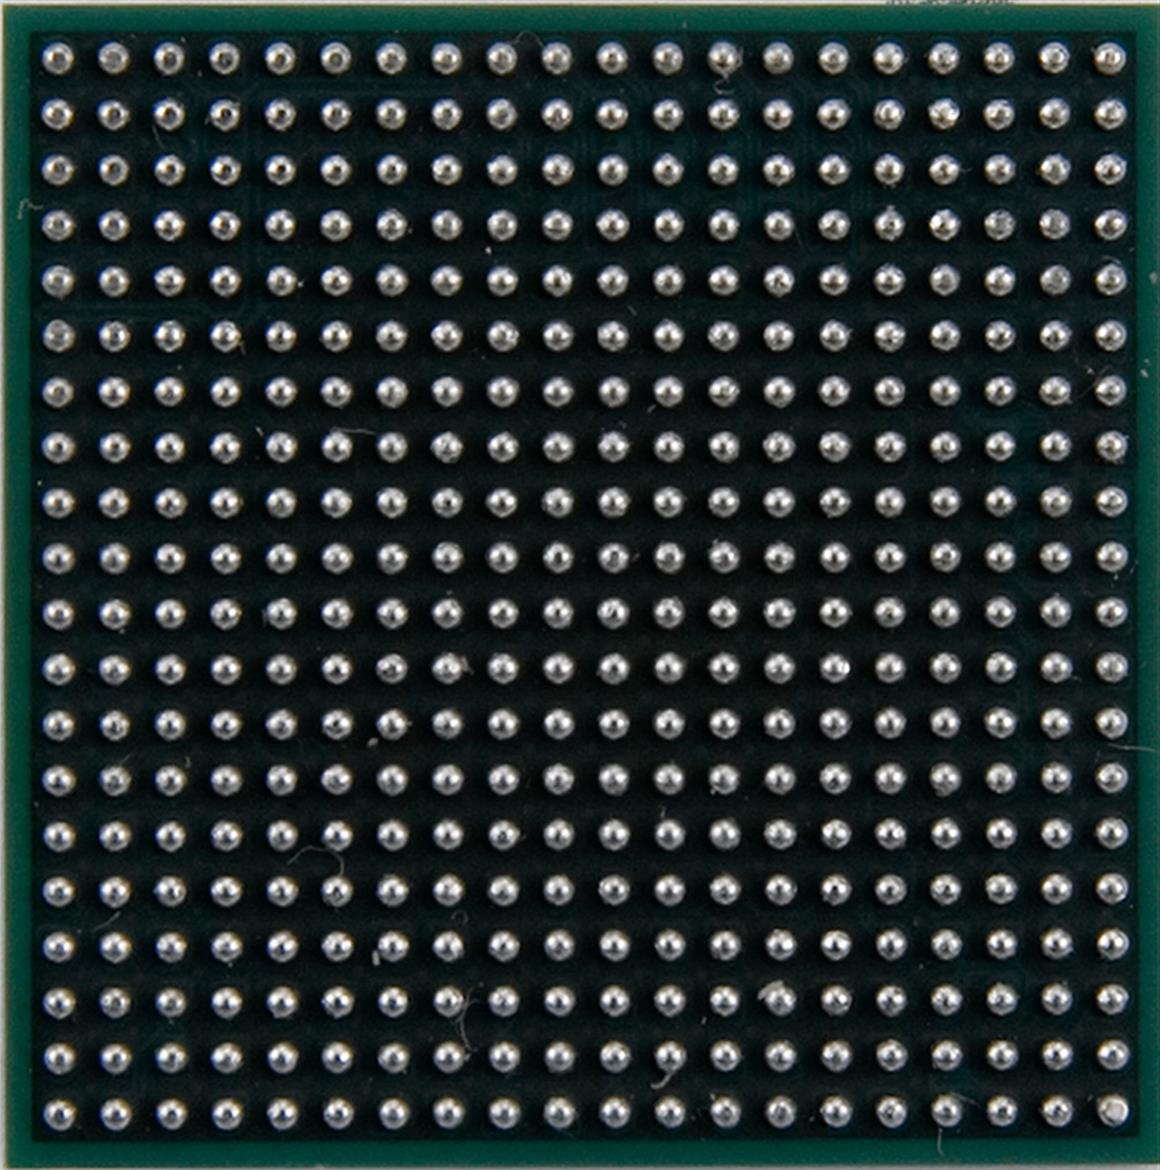 Introducing the VIA Nano Processor